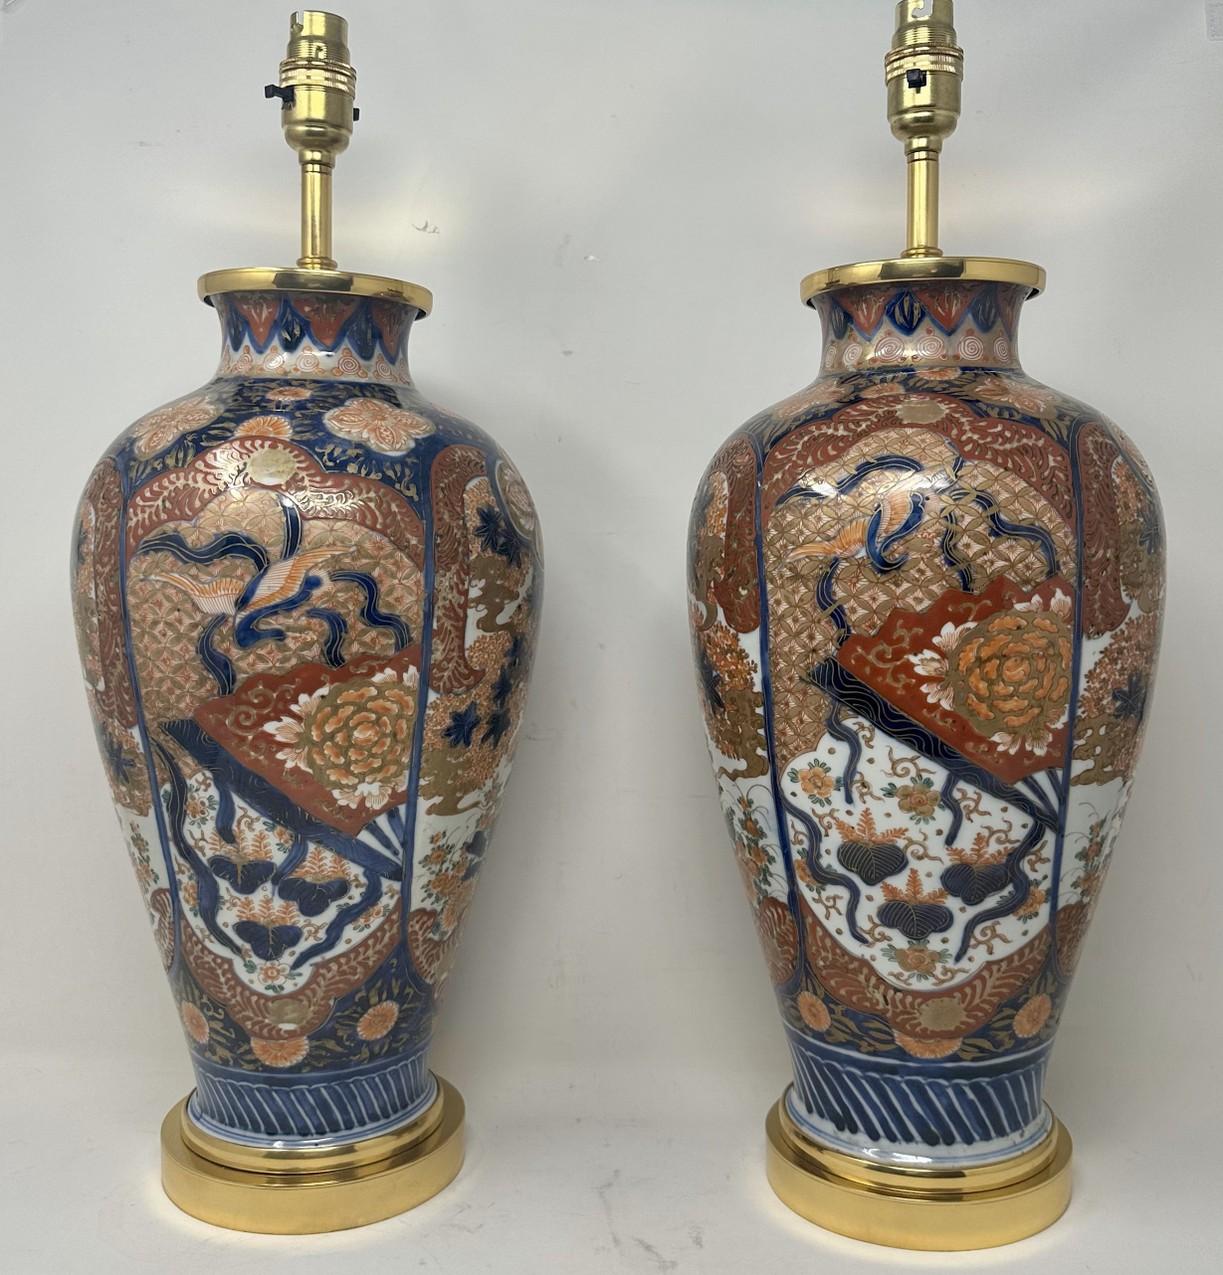 Atemberaubende Pair Traditionelle japanische Imari Bulbous Form Porzellan Vasen der umgekehrten Baluster Form mit ausgestellten Hälsen und von recht großen Proportionen, jetzt zu einem Paar von elektrischen Tischlampen umgewandelt, komplett mit